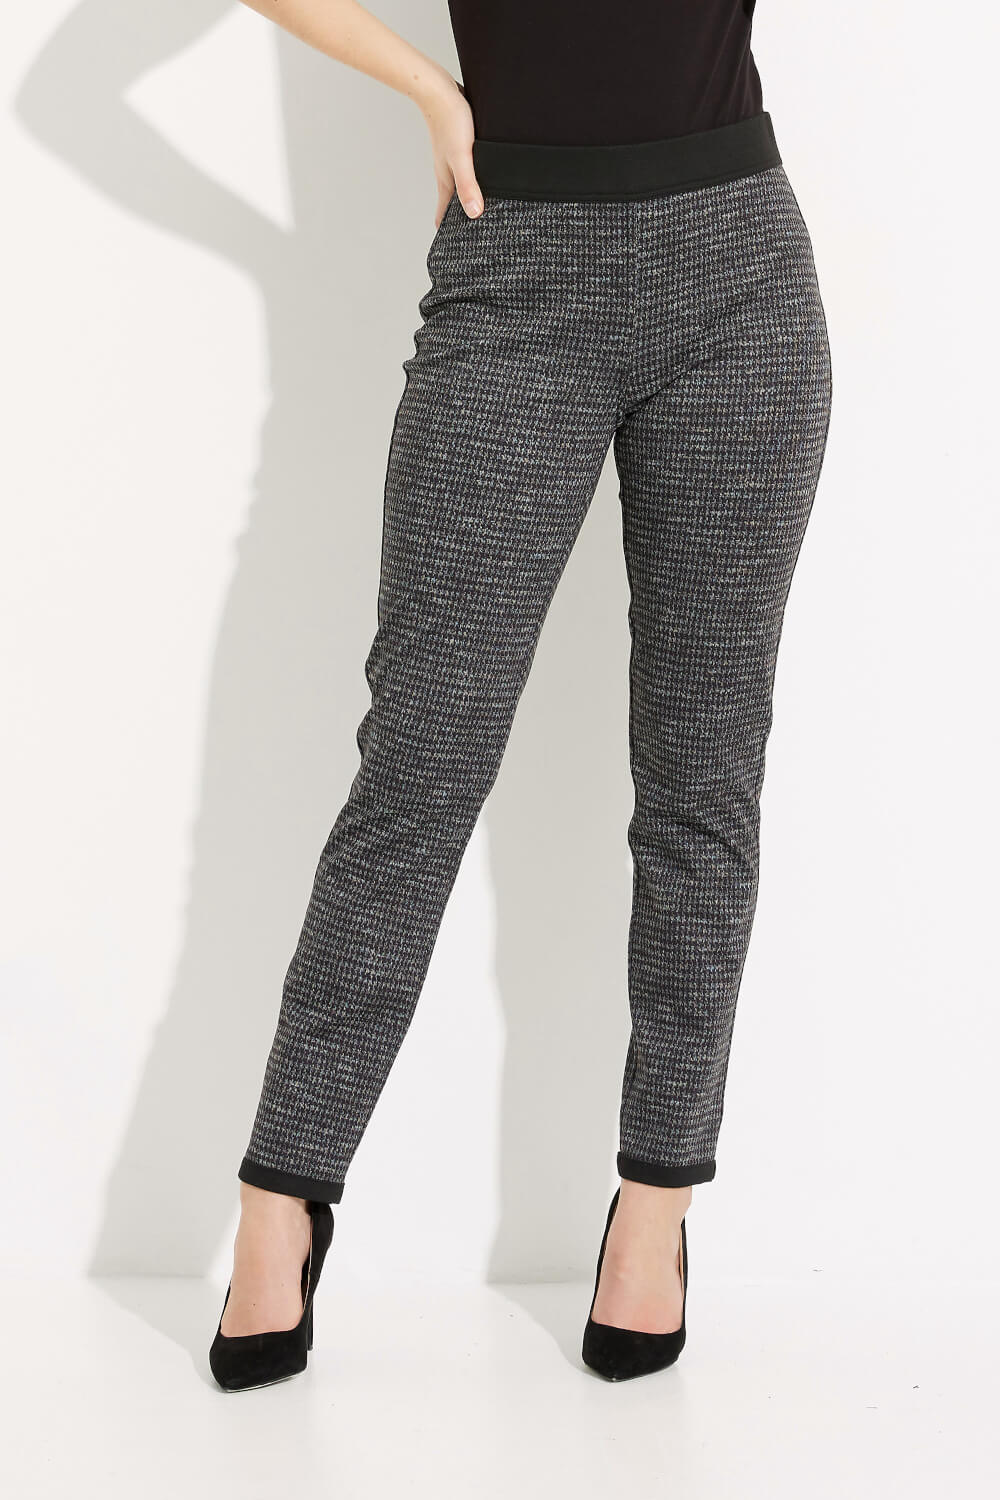 Pantalon à imprimé pied-de-poule modèle 233195. Noir/gris